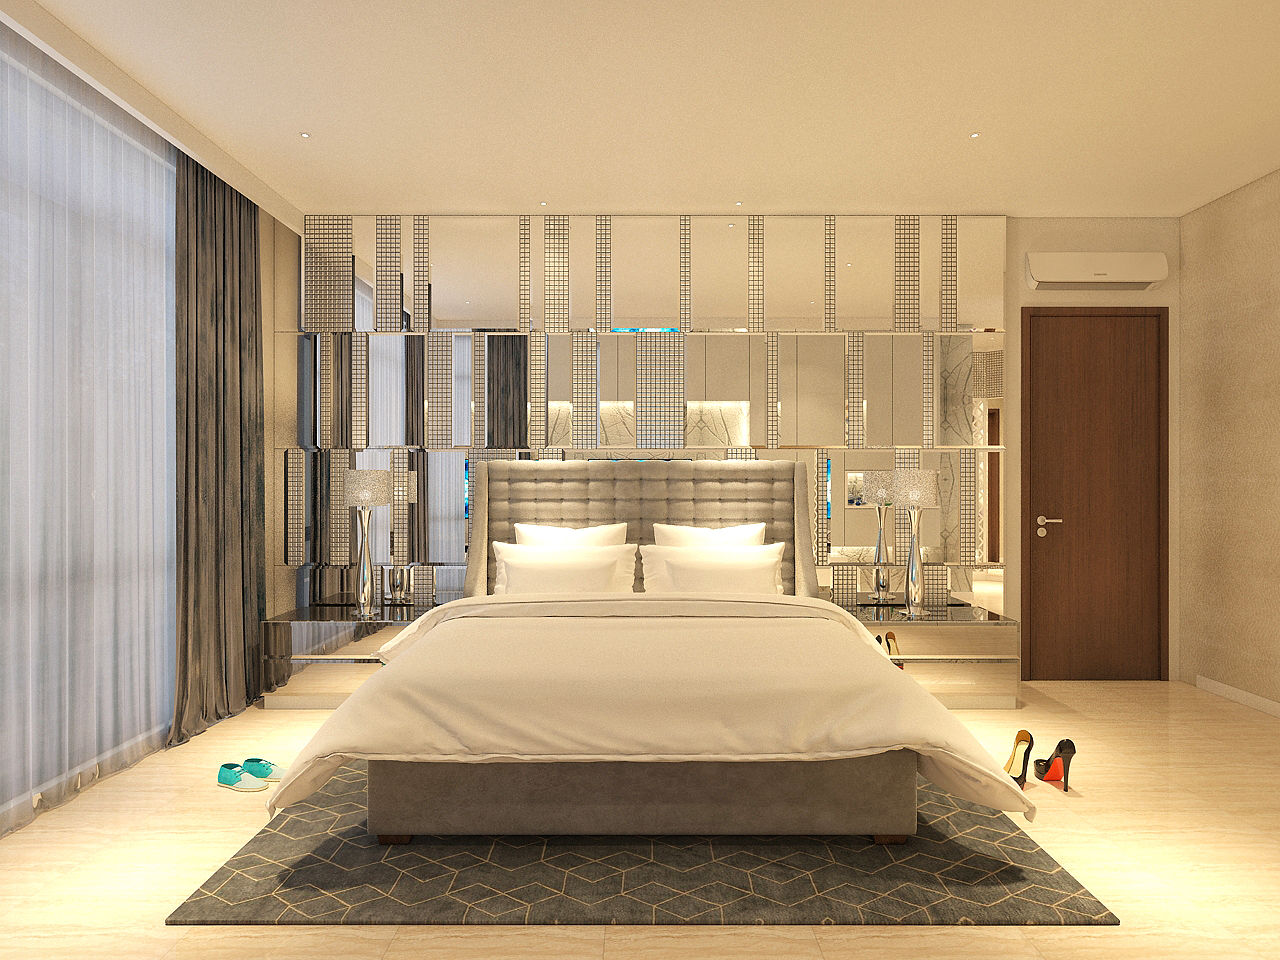 PRIVATE RESIDENTIAL @ NAVAPARK, BSD CITY, TANGERANG, PT. Dekorasi Hunian Indonesia (DHI) PT. Dekorasi Hunian Indonesia (DHI) Modern style bedroom